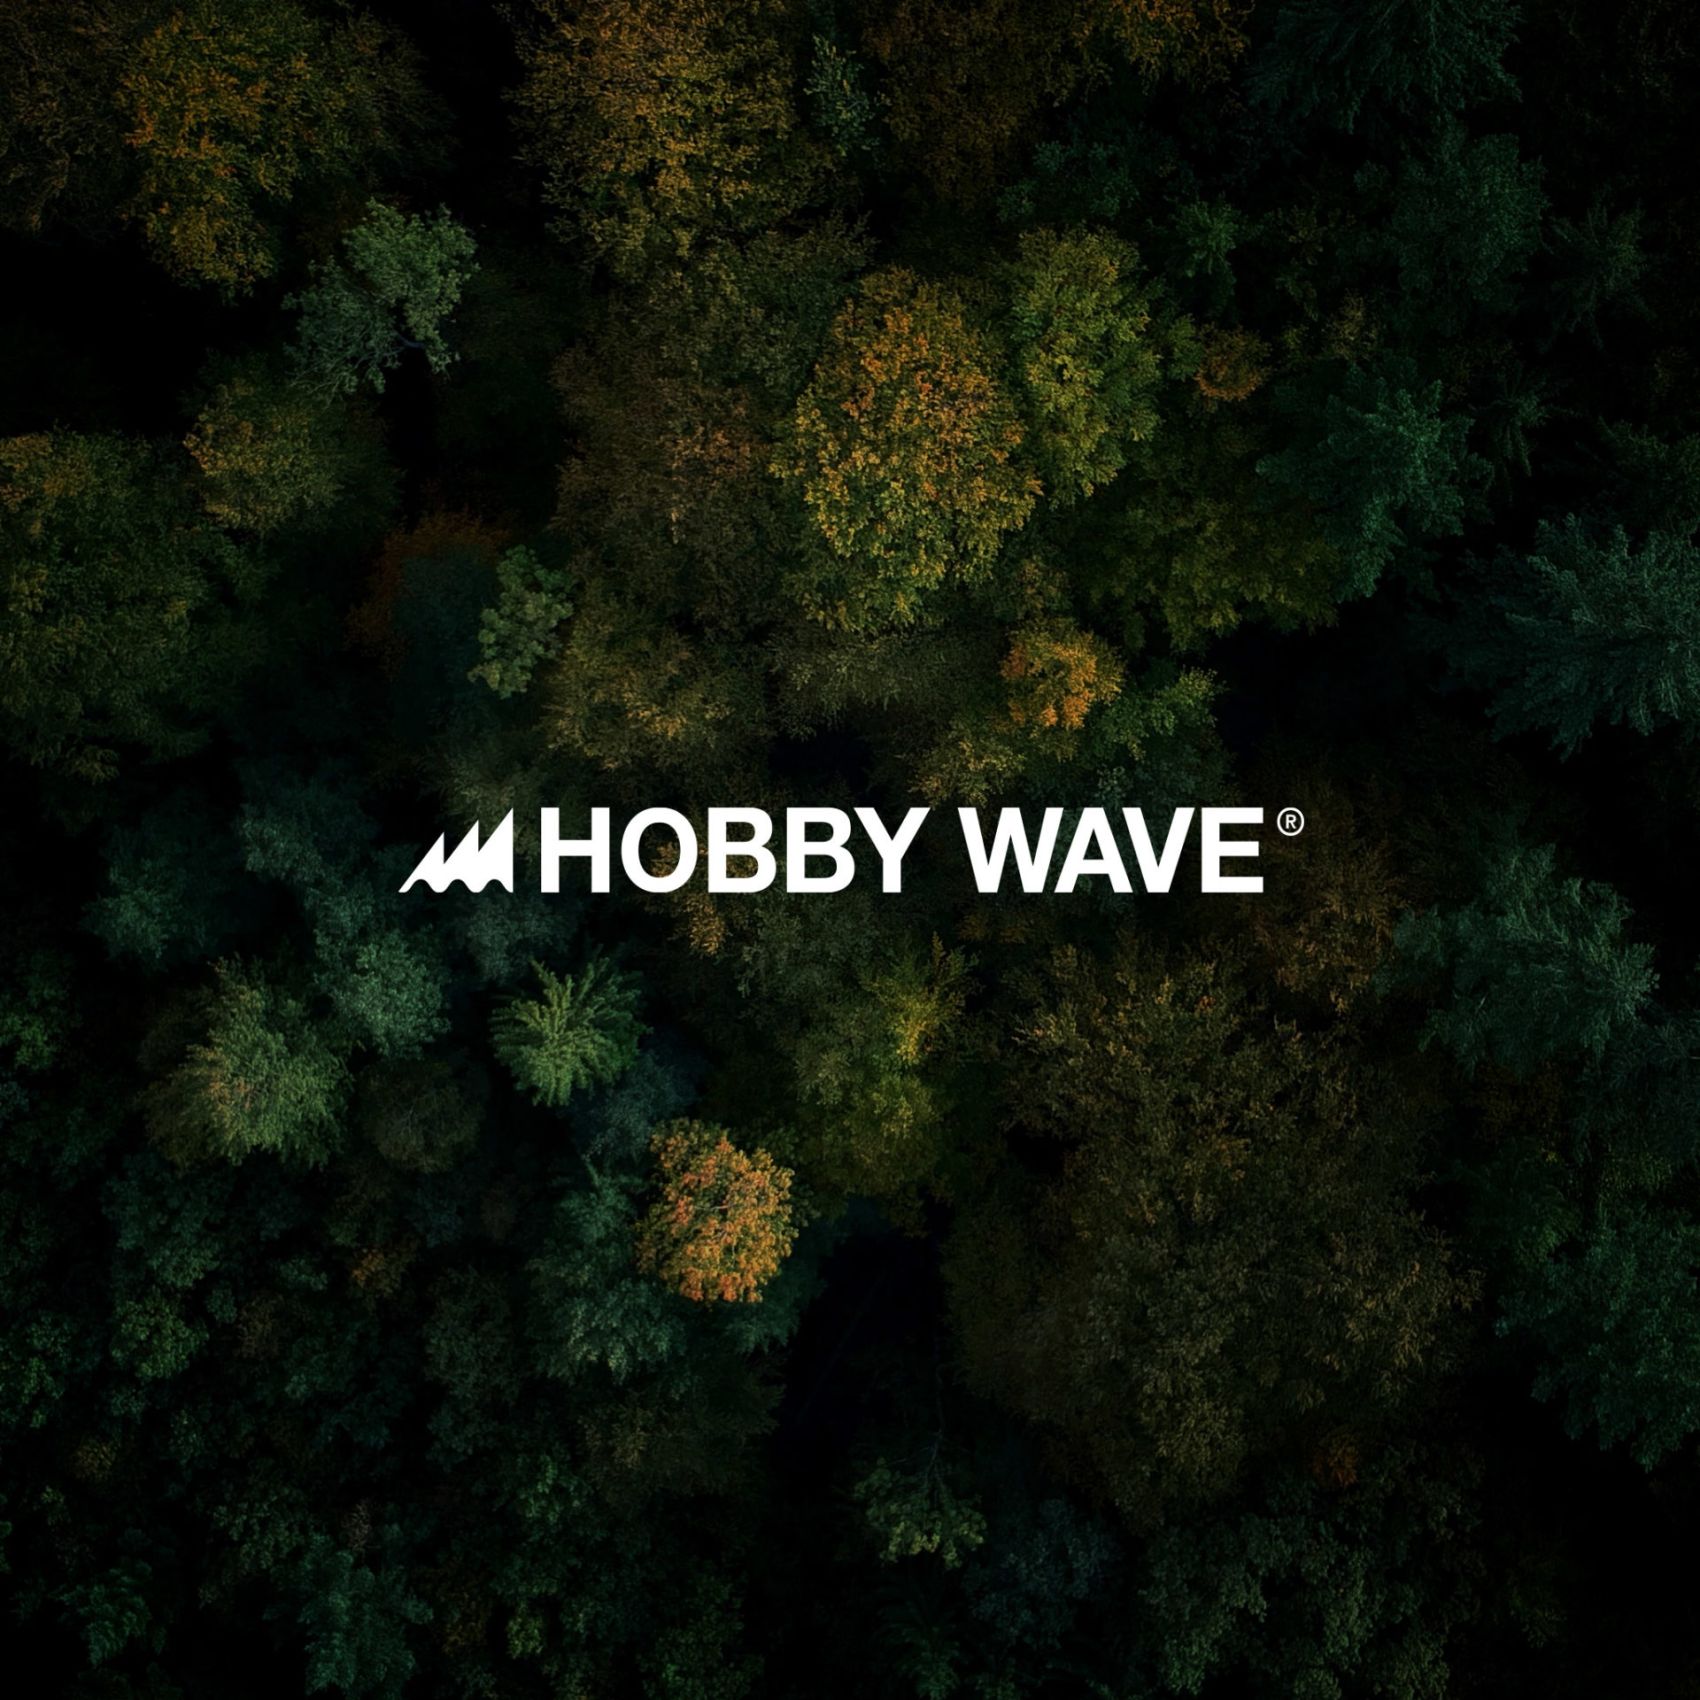 hobby-wave-outdoor-gear-branding